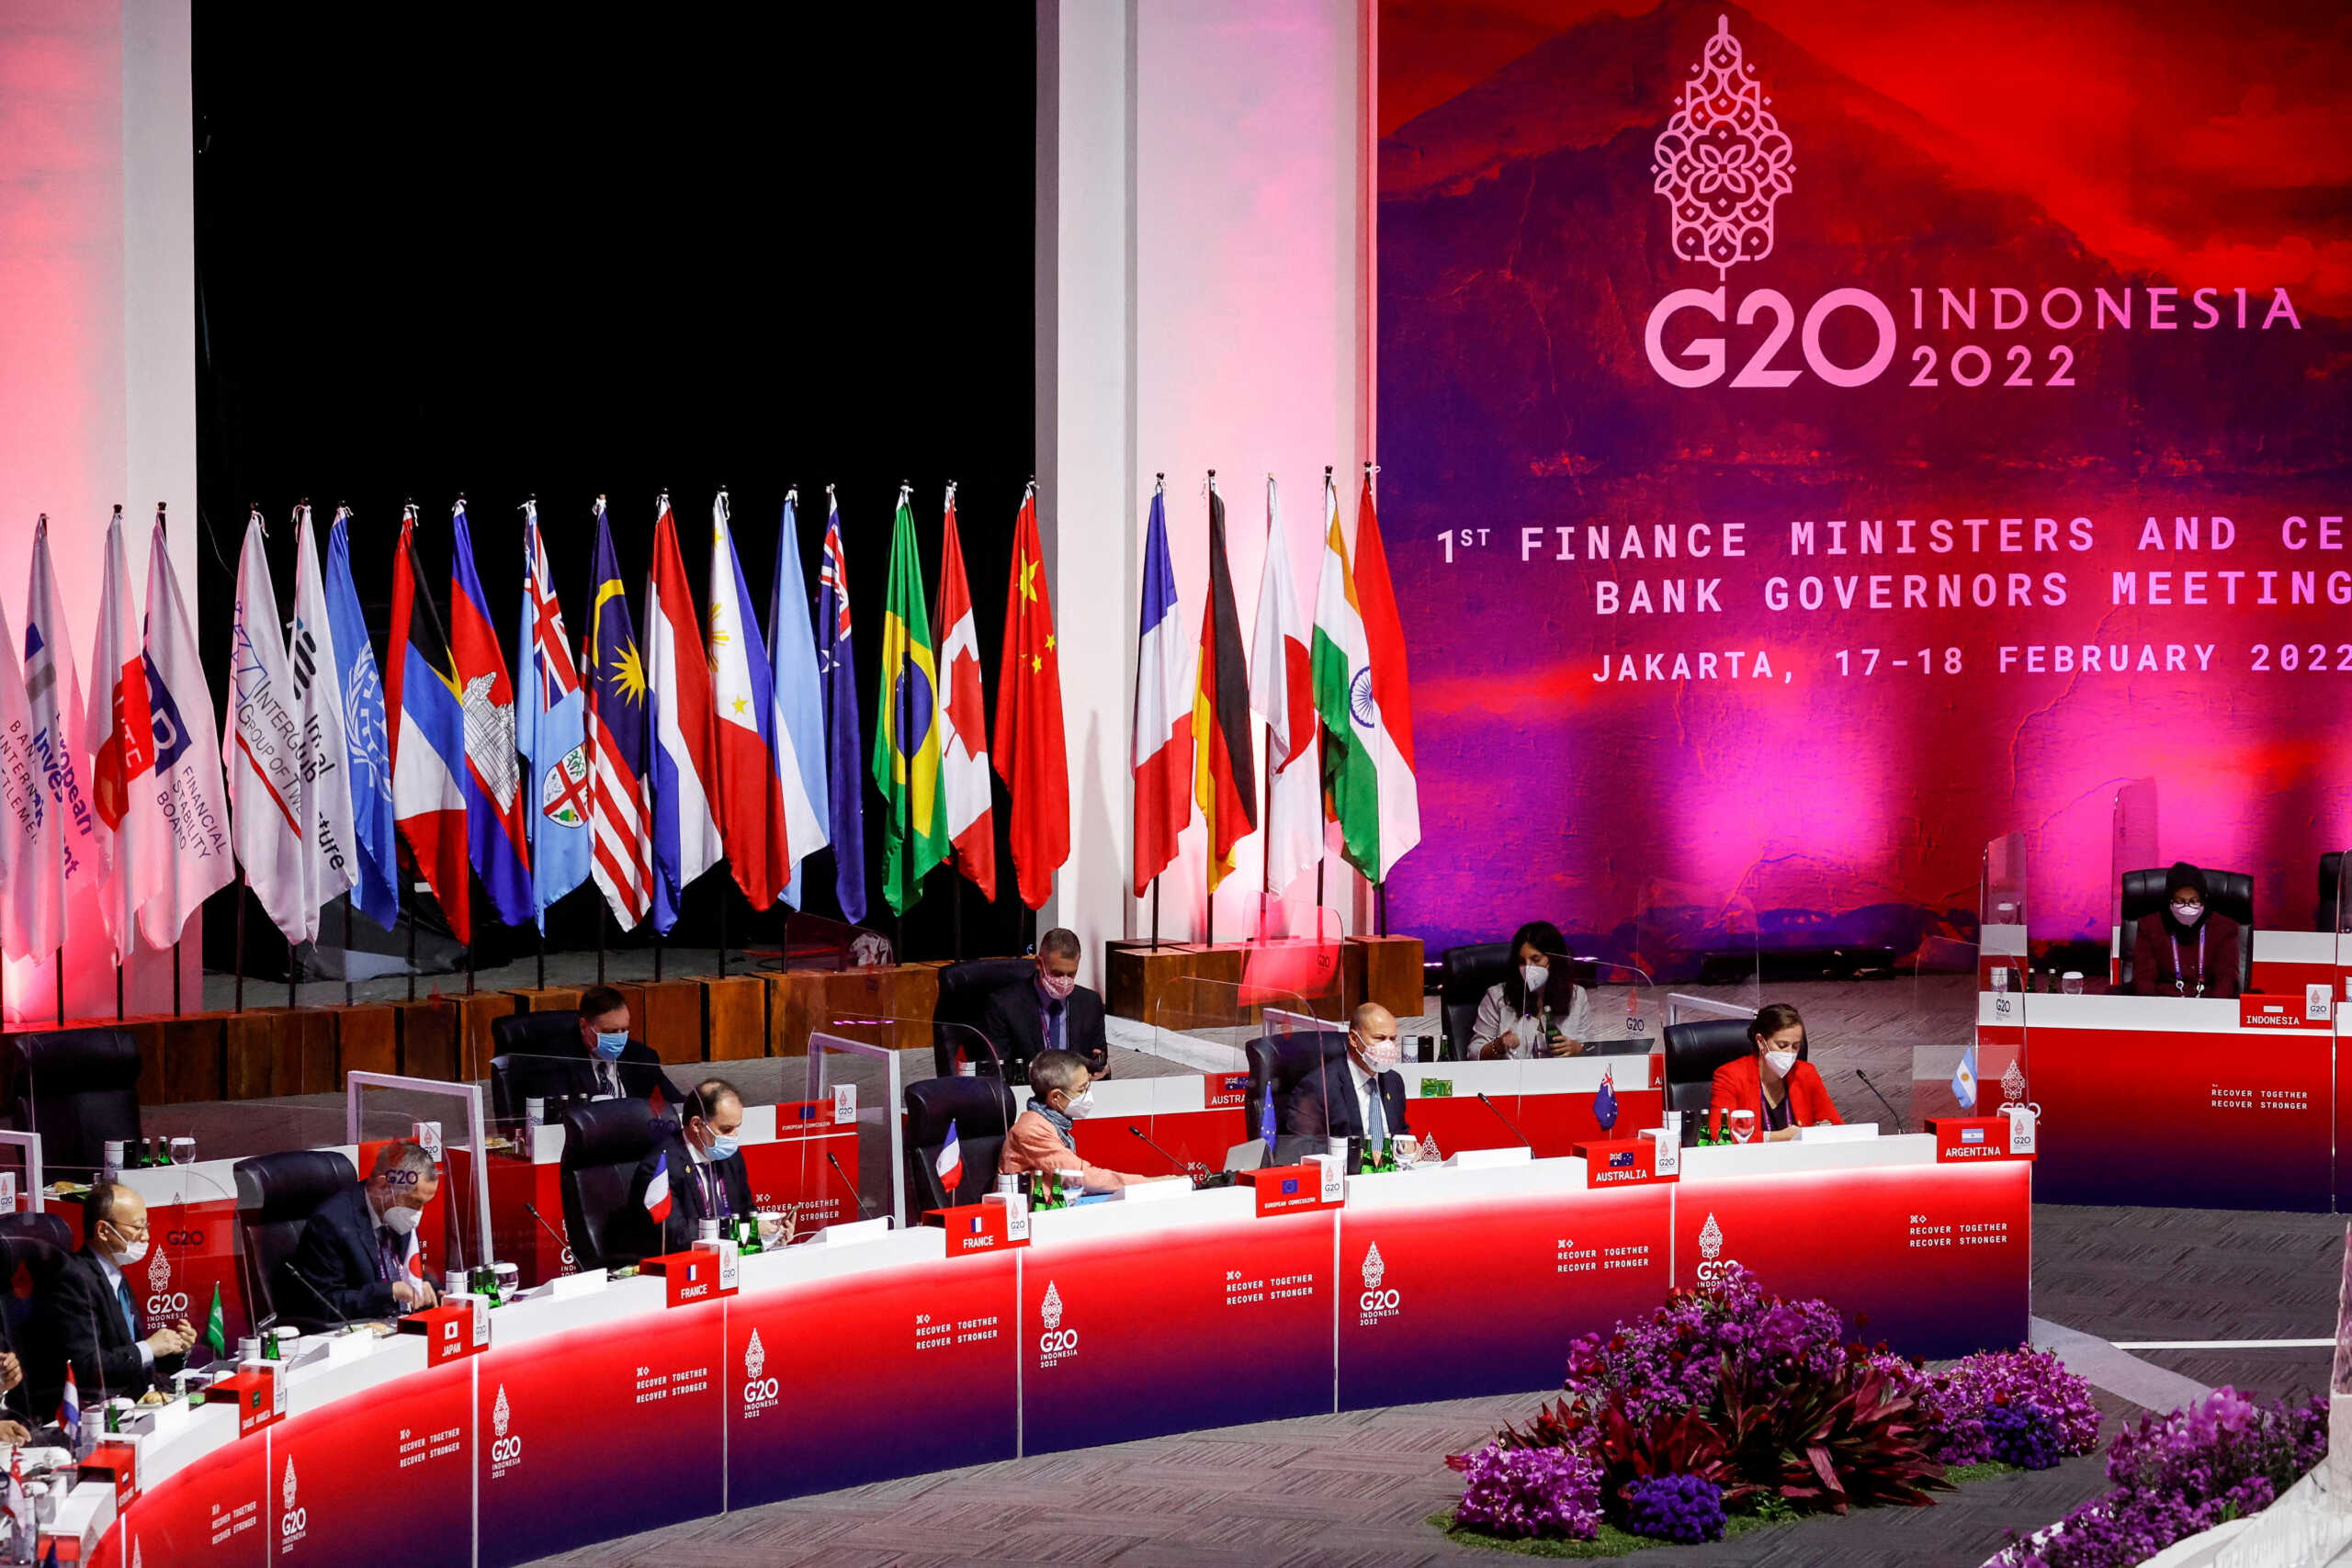 Οι ΗΠΑ δηλώνουν ότι οι εκπρόσωποι του Πούτιν δεν έχουν καμία θέση στη σύνοδο της G20